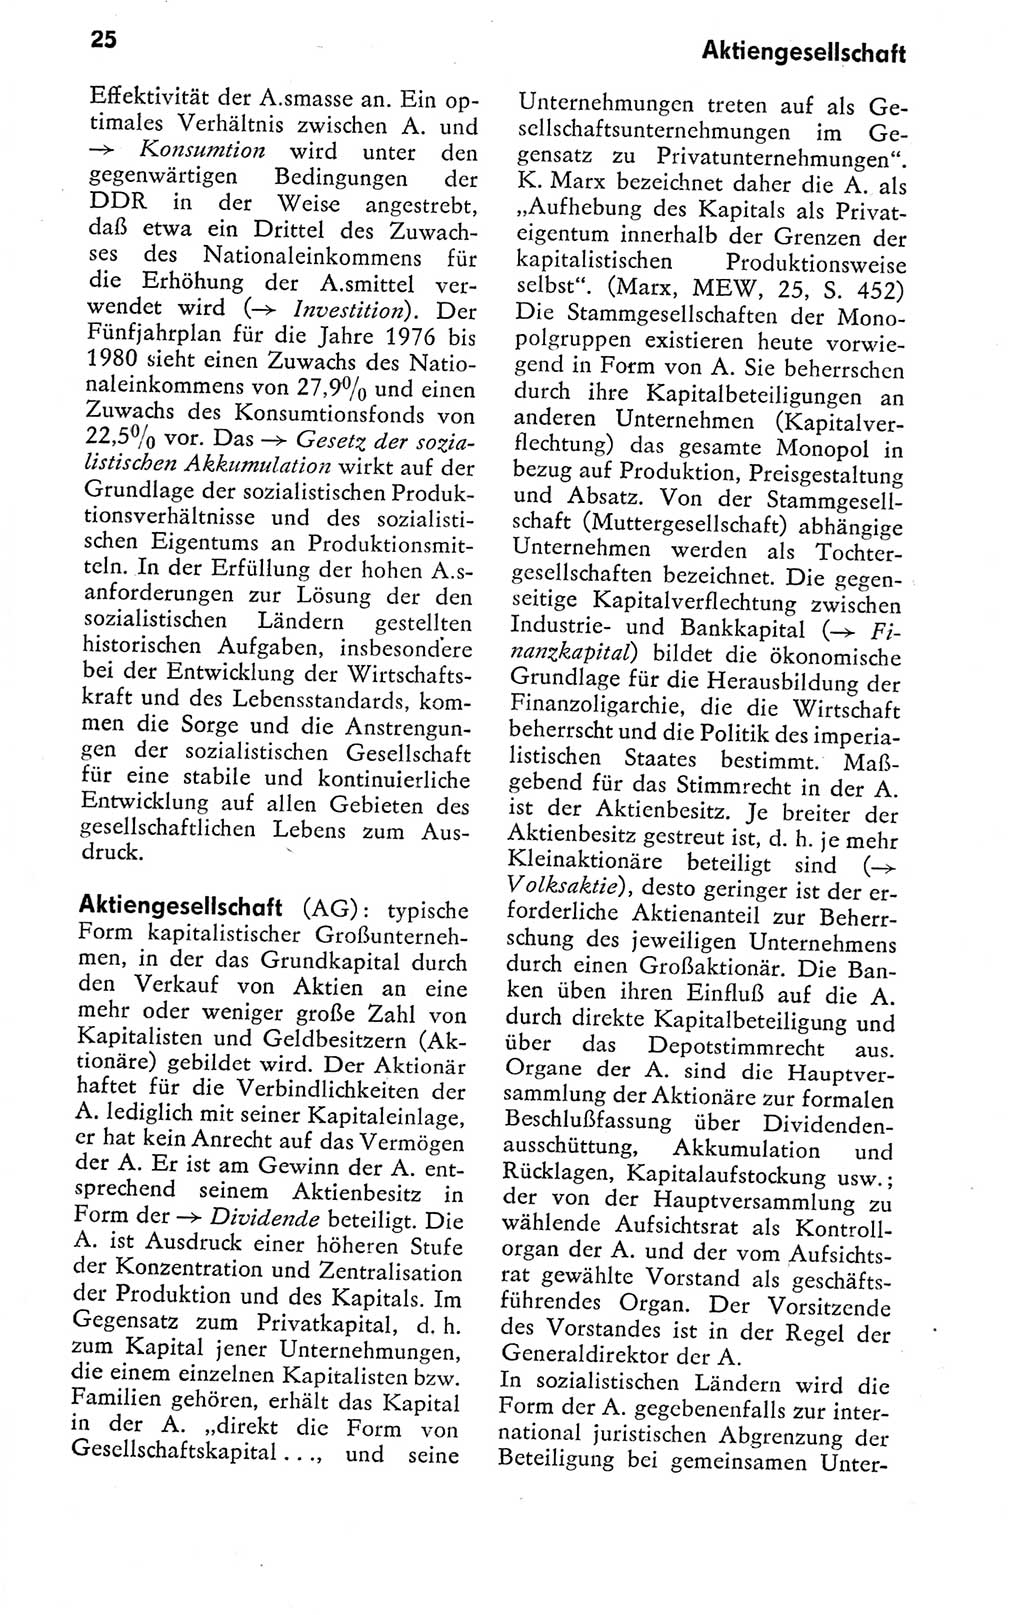 Kleines politisches Wörterbuch [Deutsche Demokratische Republik (DDR)] 1978, Seite 25 (Kl. pol. Wb. DDR 1978, S. 25)